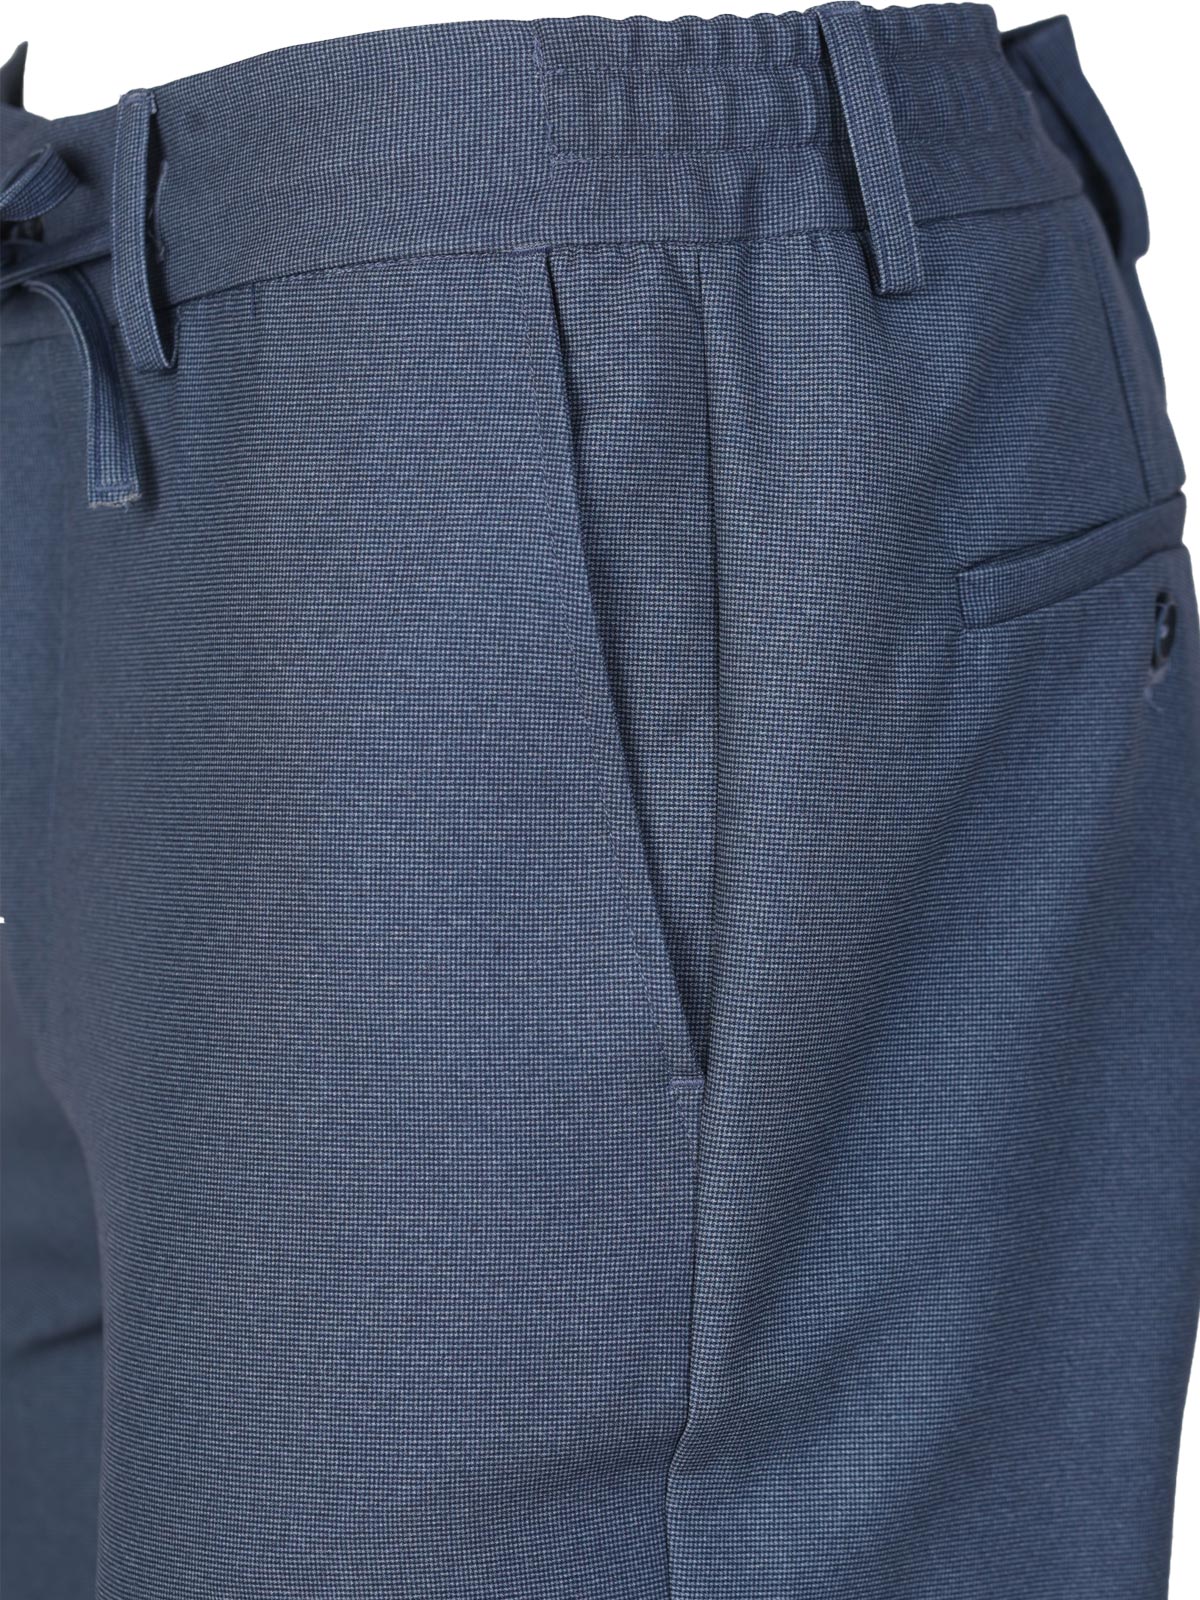 Pantaloni albastru mijlociu cu sireturi - 29012 € 55.12 img3